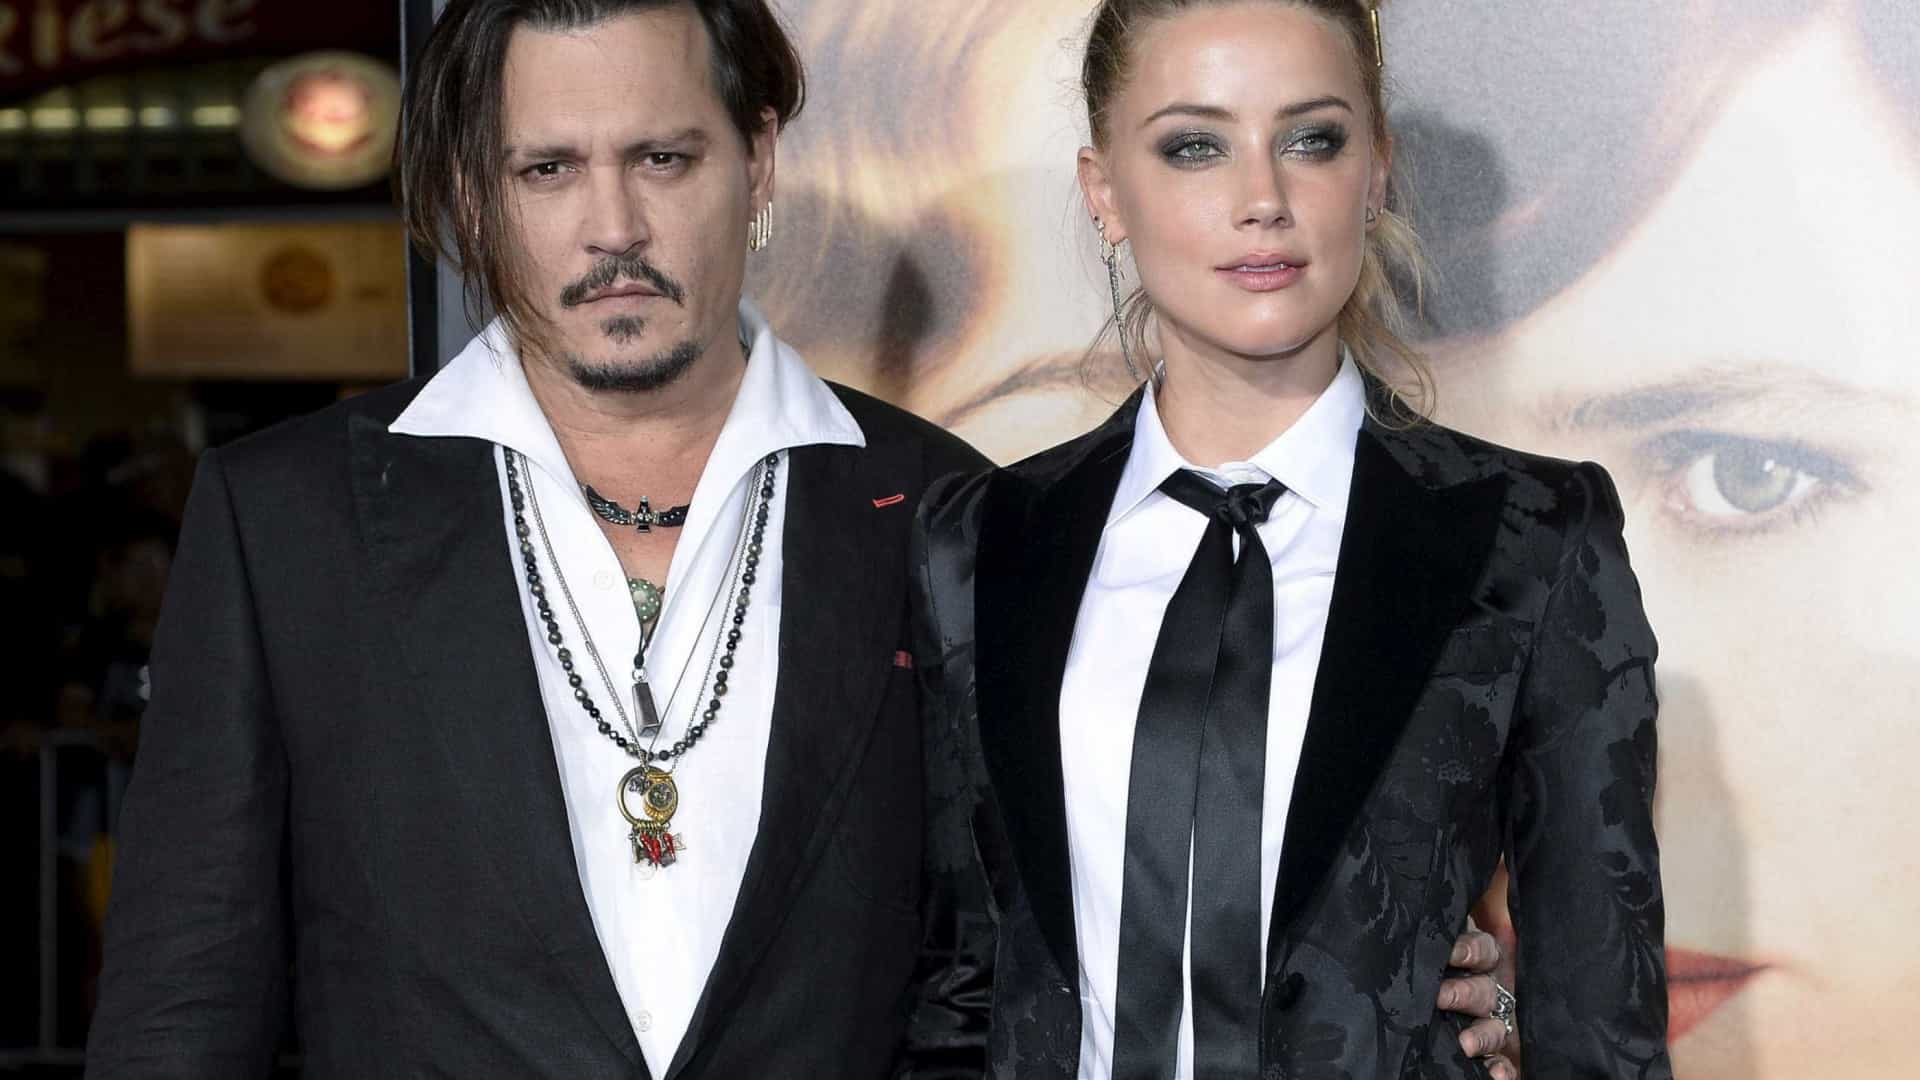 Amber Heard, de Aquaman, faz terríveis acusações contra Johnny Depp